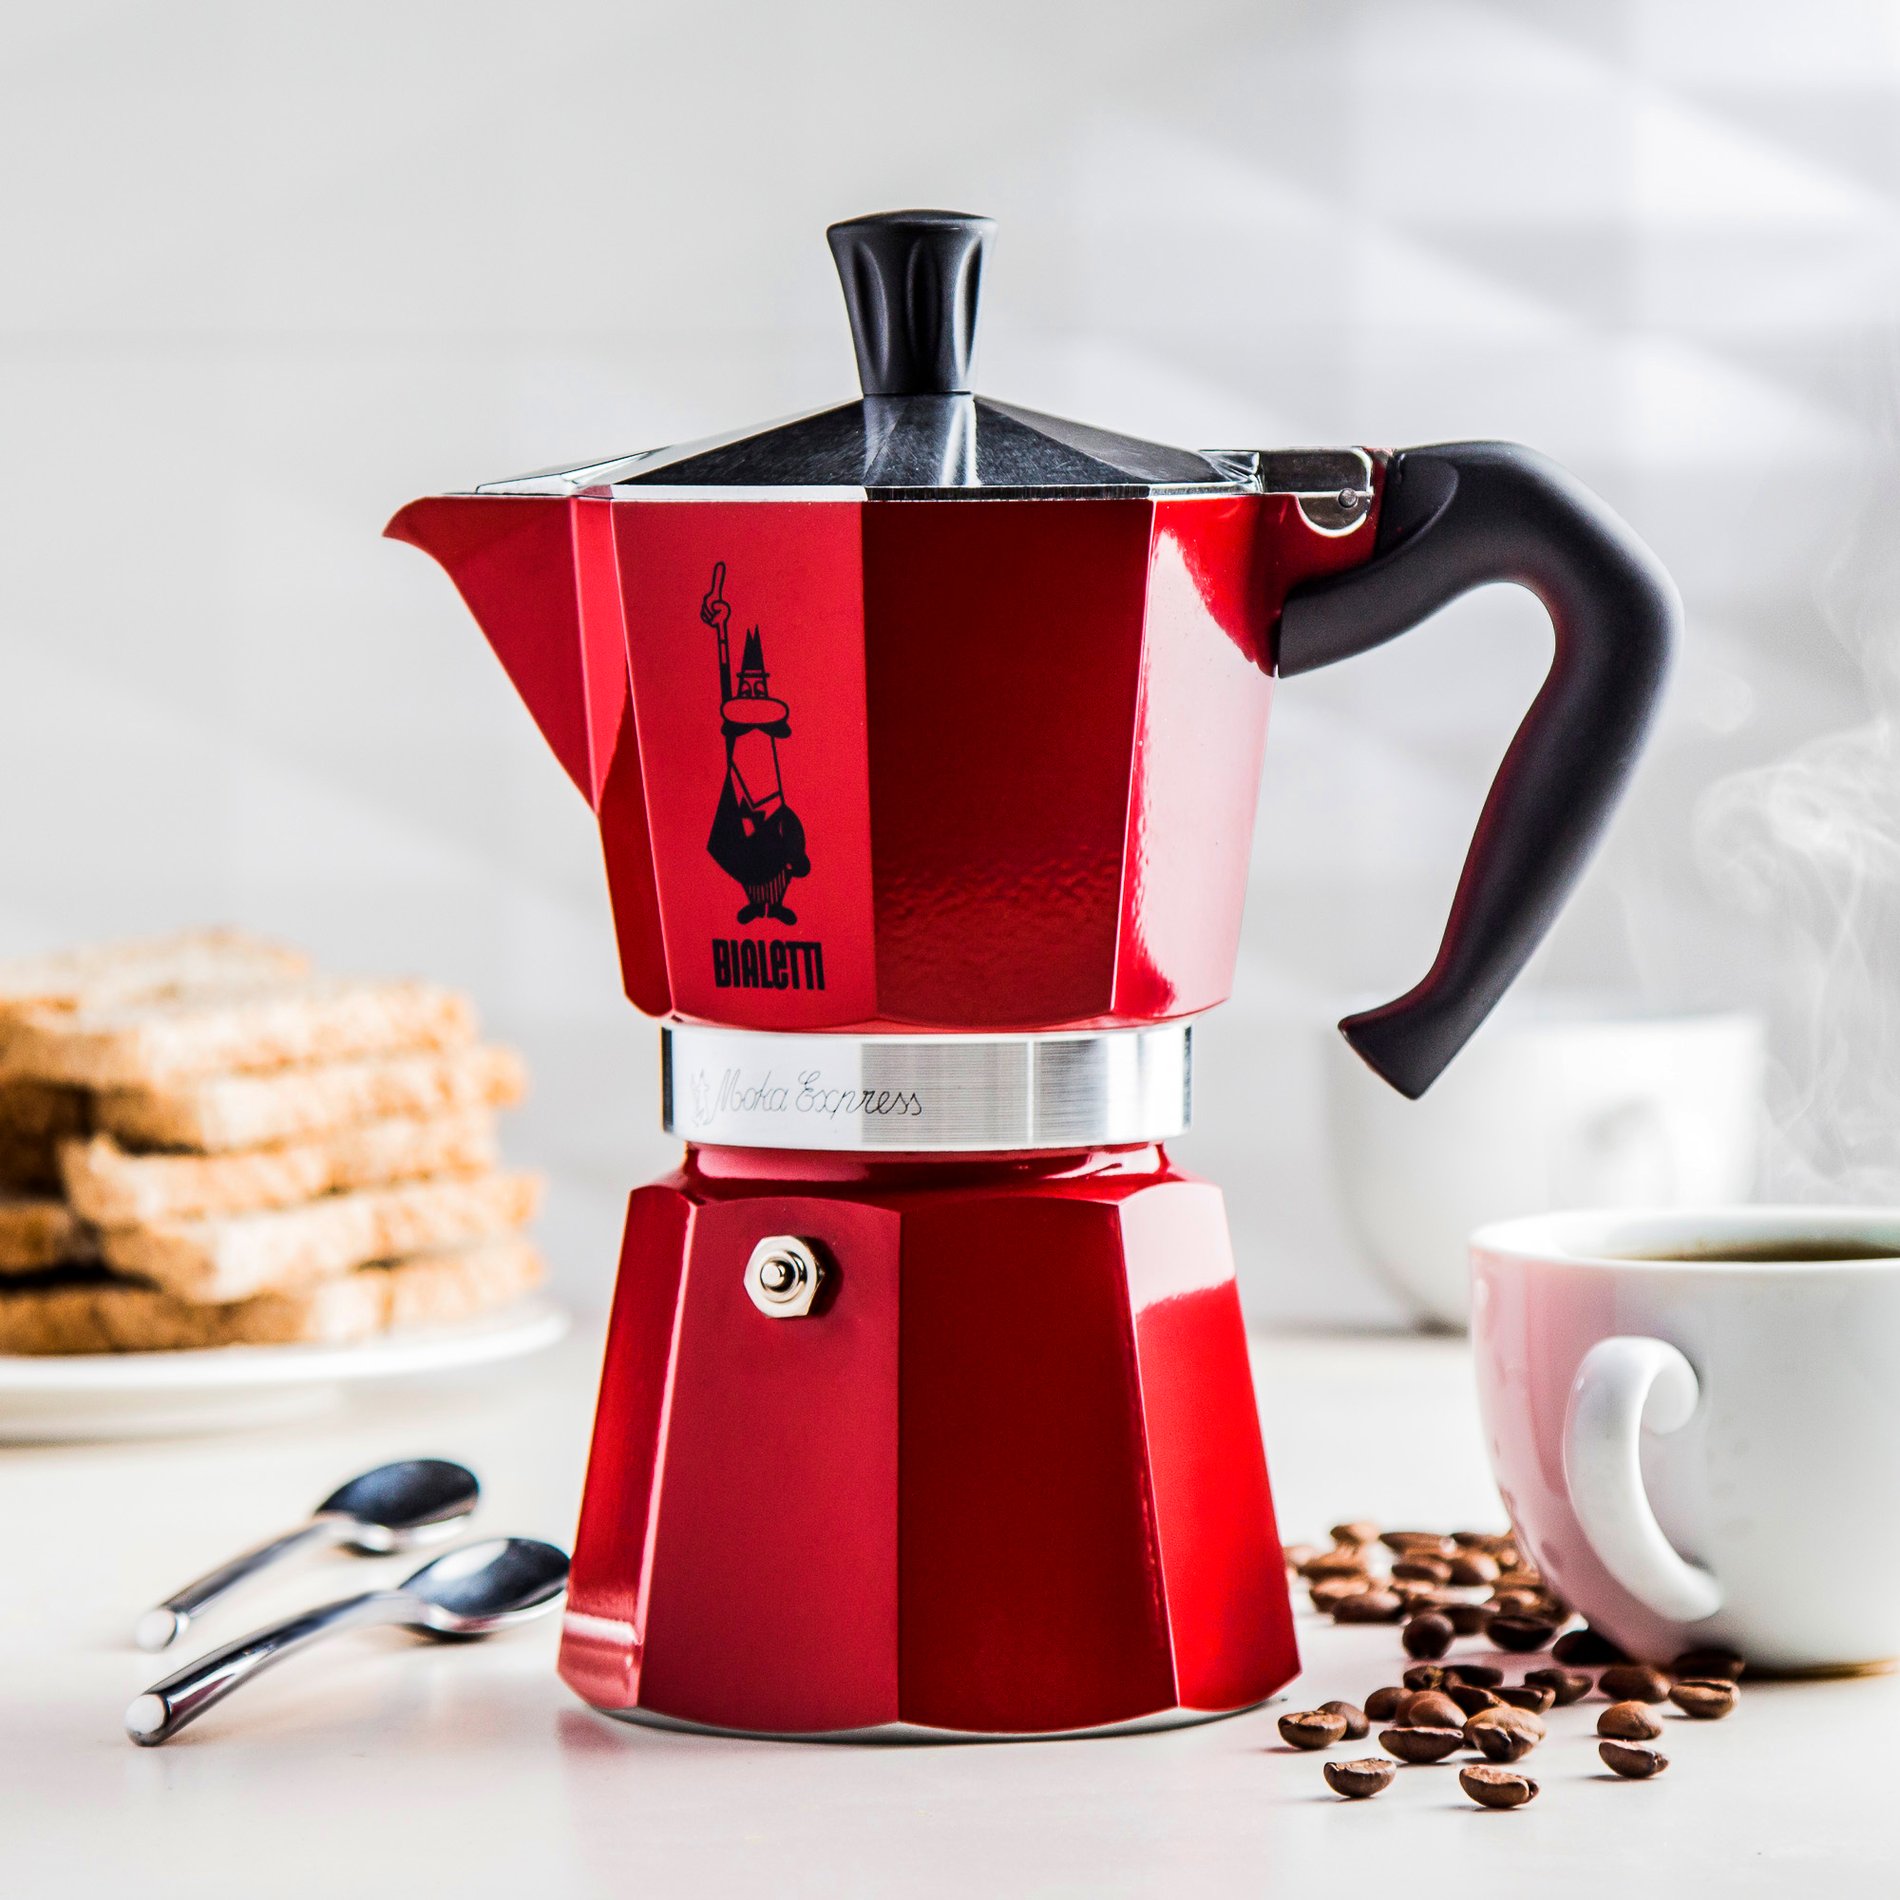 BIALETTI Moka Express 6 šálků espressa (6 tz) červený - italský hliníkový tlakový kávovar